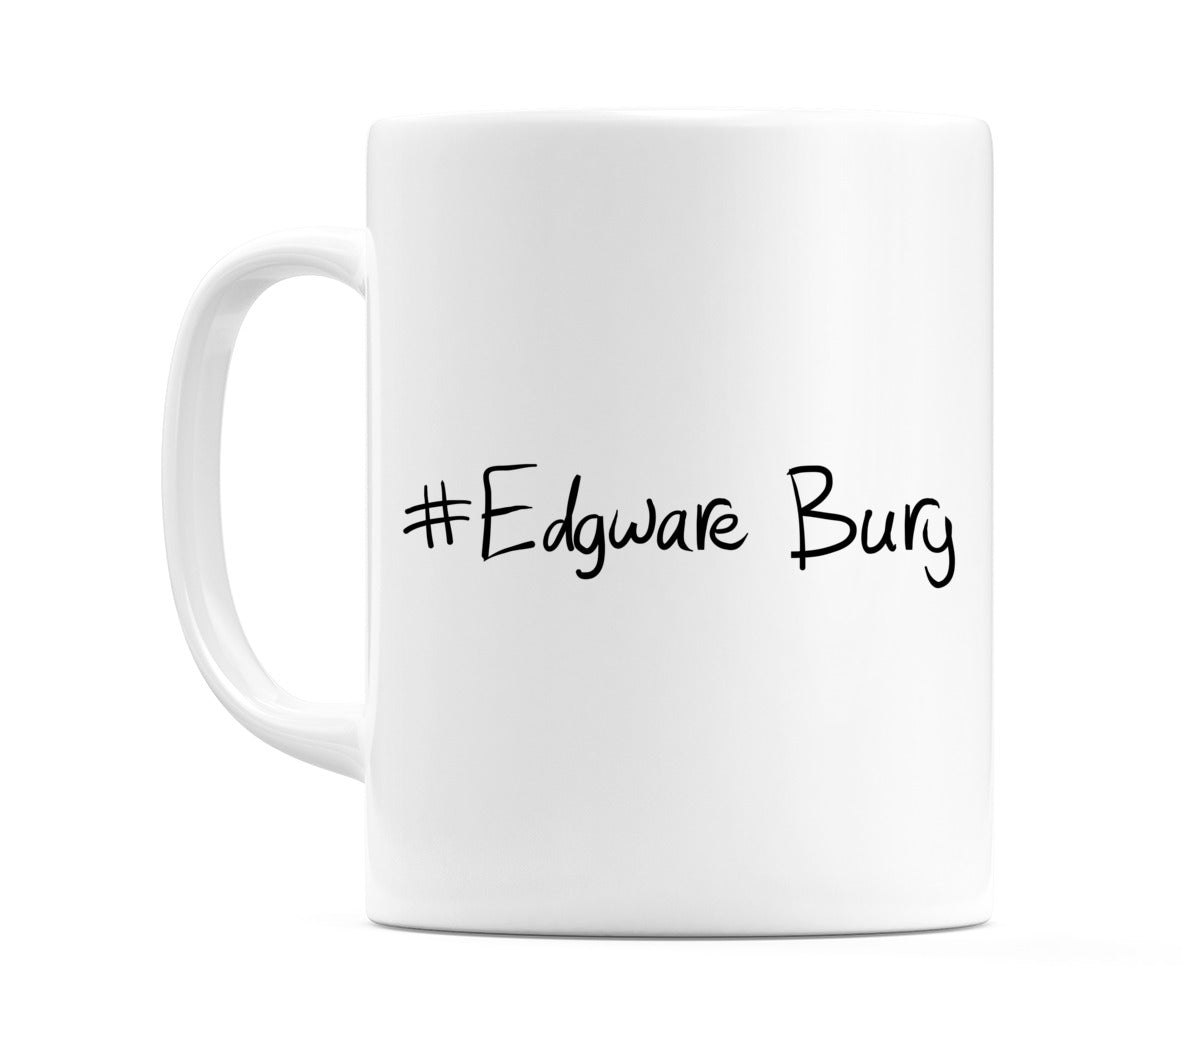 #Edgware Bury Mug